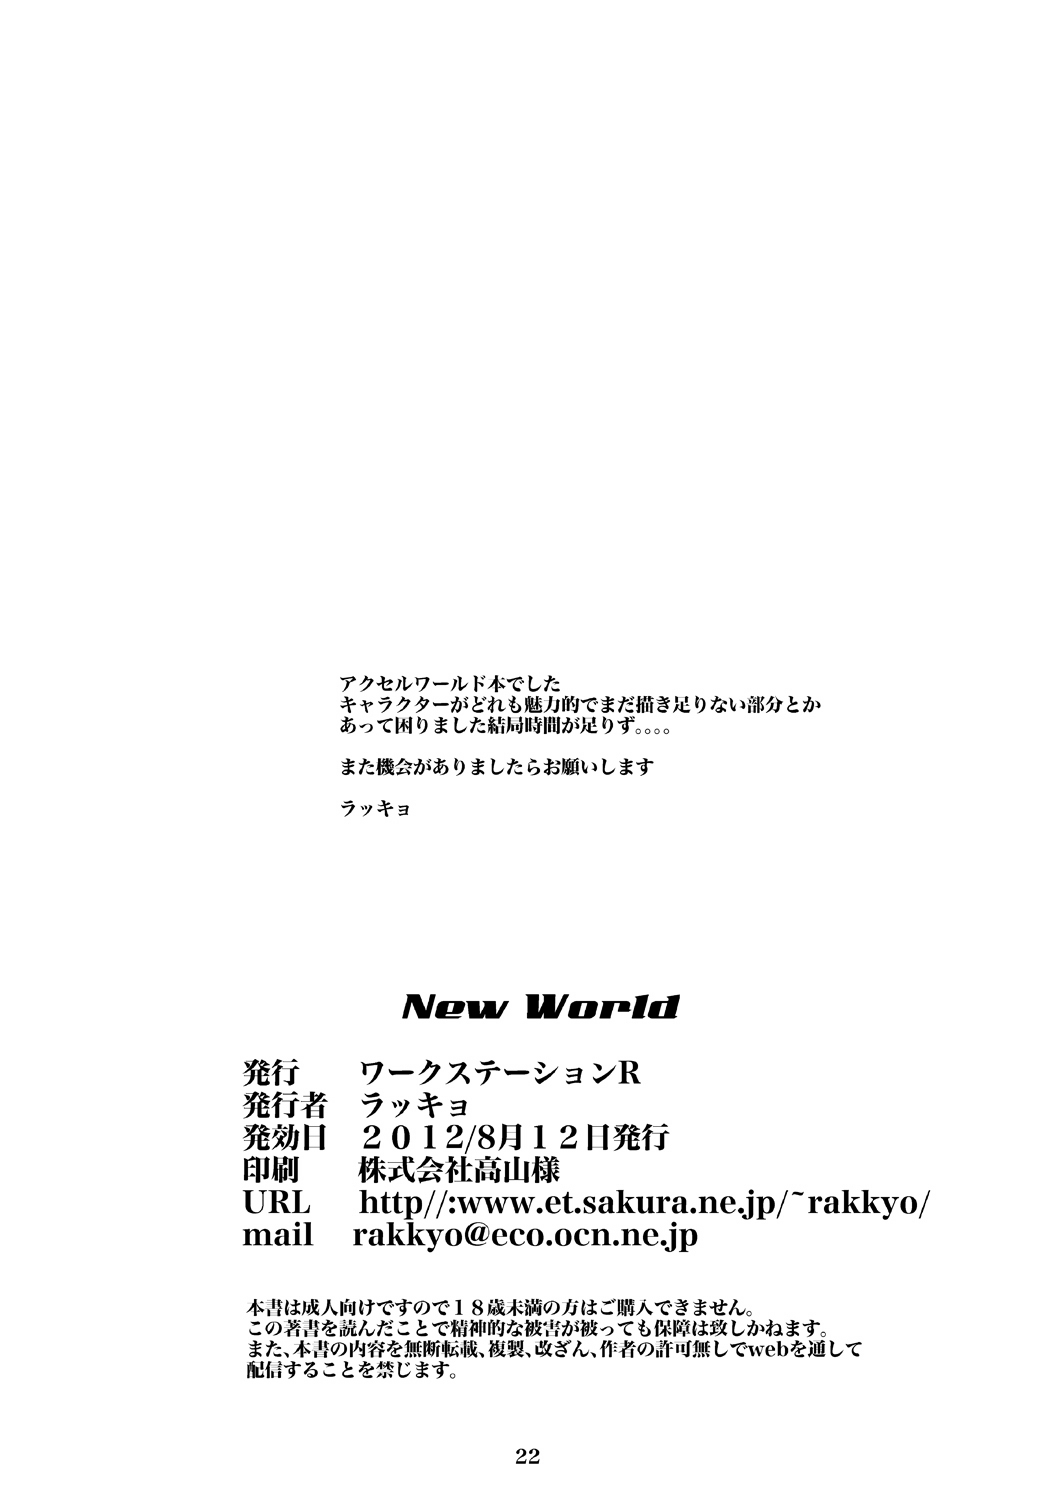 [Workstation R] New World (Accel World) [ワークステーションR] New World (アクセル・ワールド)